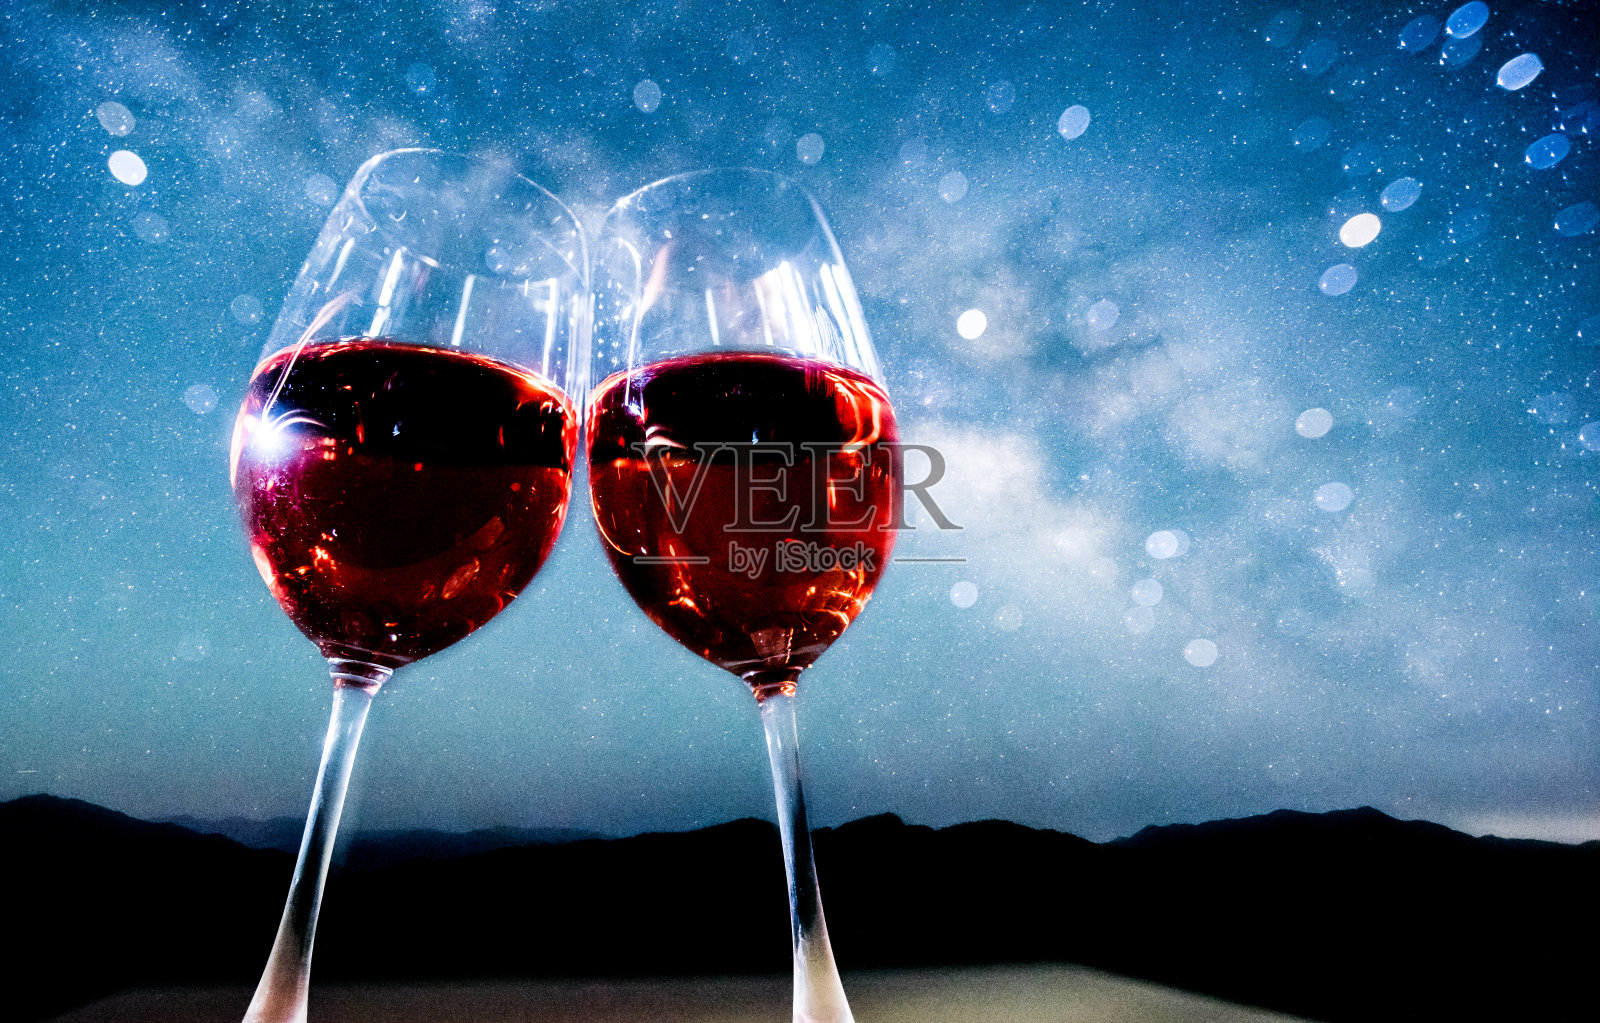 star&wine草照片摄影图片